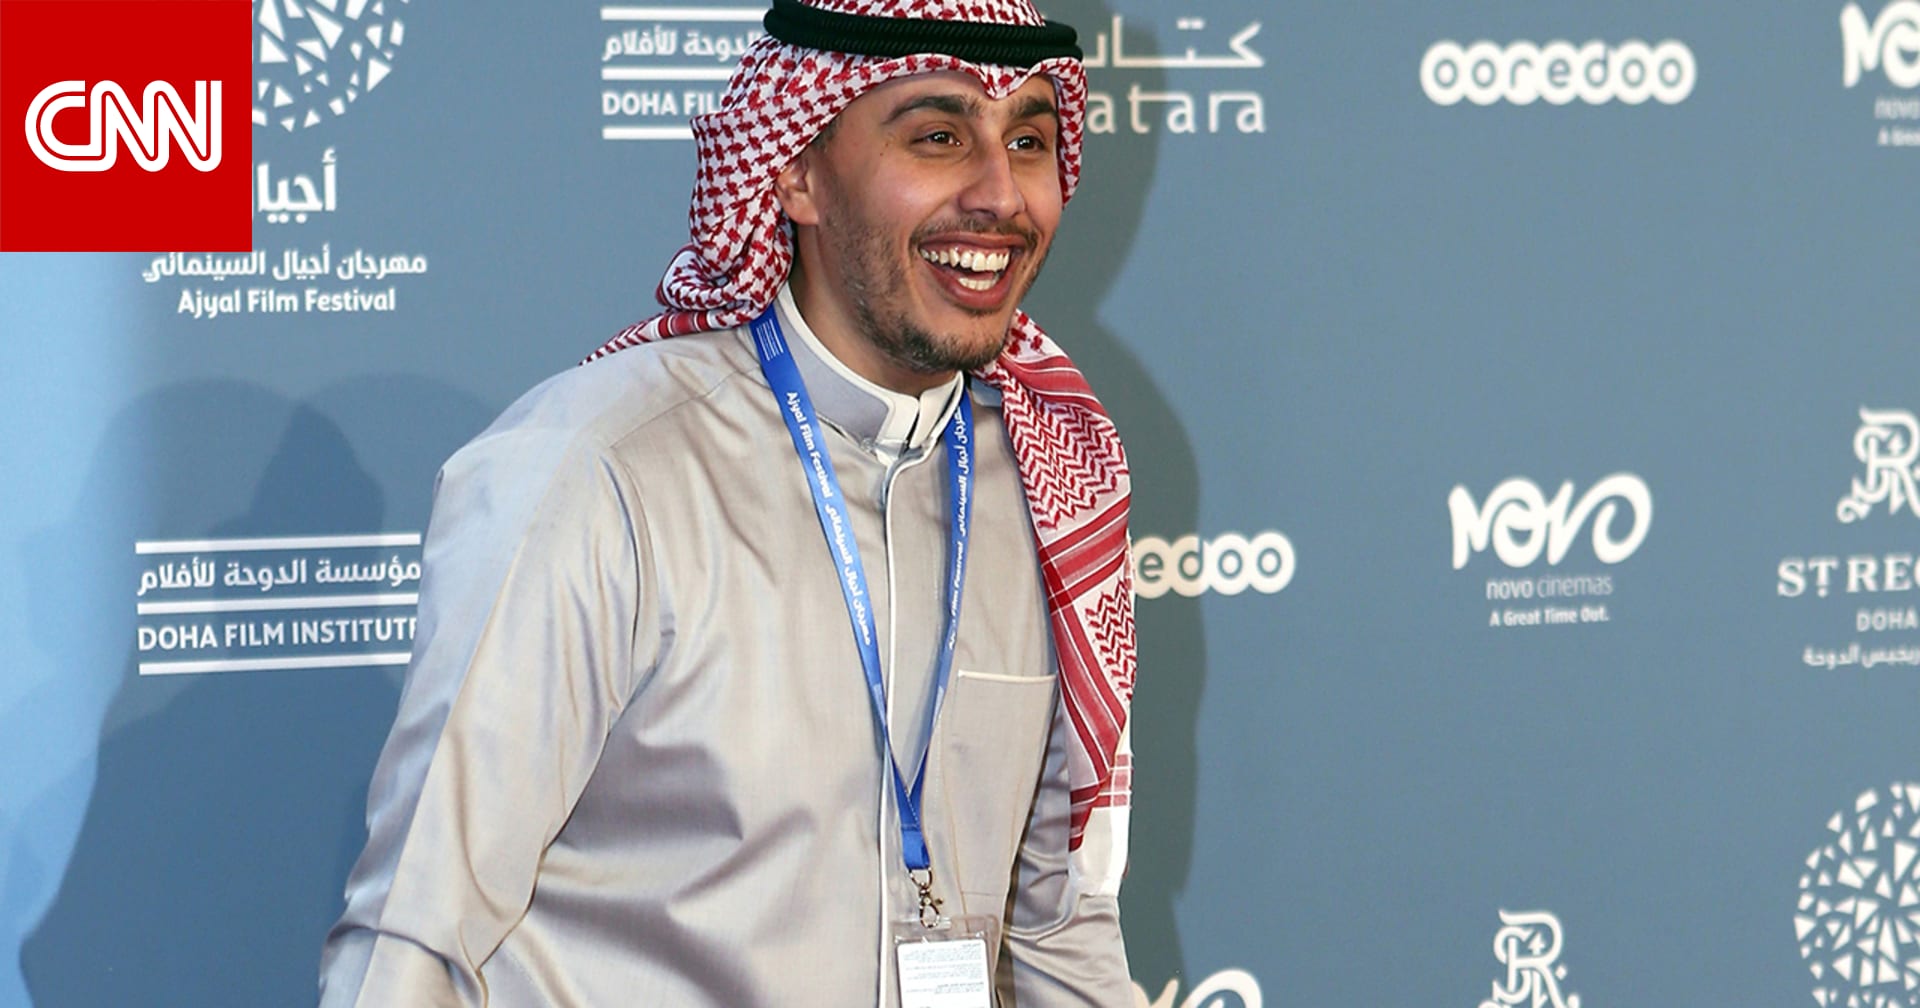 الإعلامي الكويتي شعيب راشد يرد على دعوات سعودية لمقاطعته: الذباب  لا يهش ولا ينش  